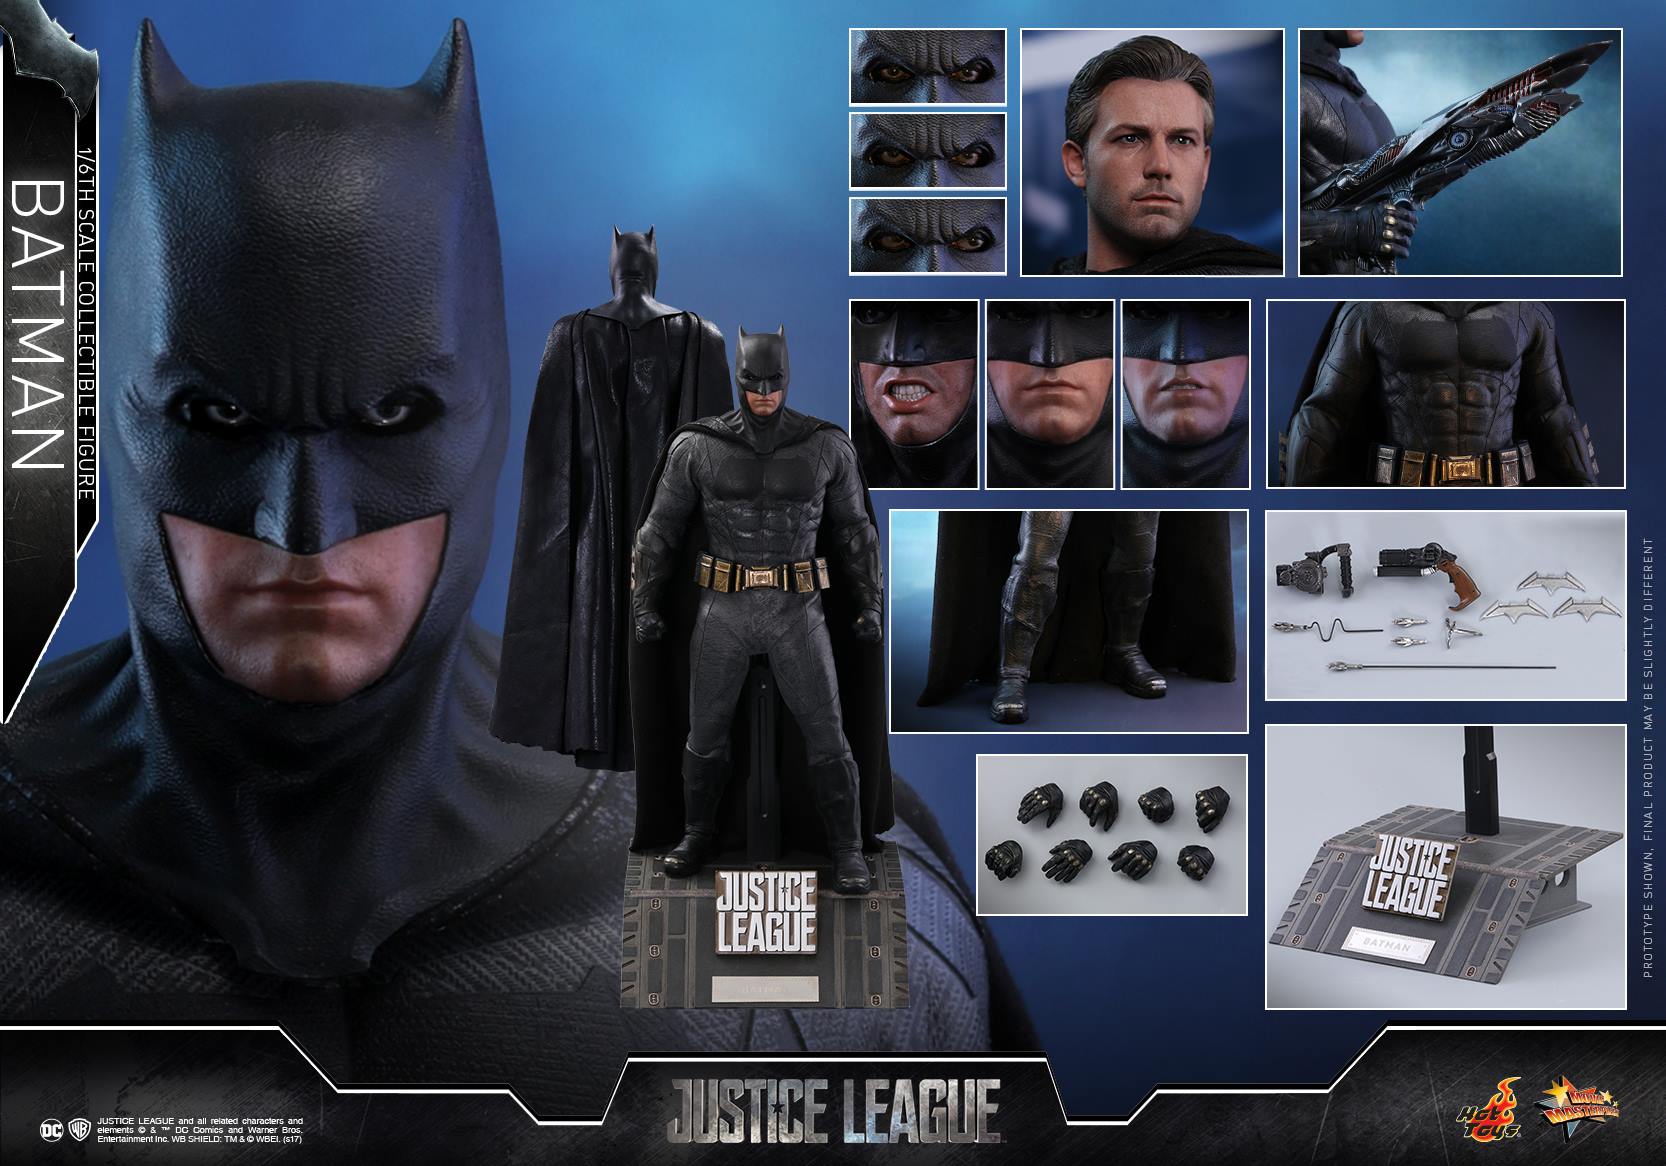 Hot Toys - MMS455 - Justice League - Batman - Marvelous Toys